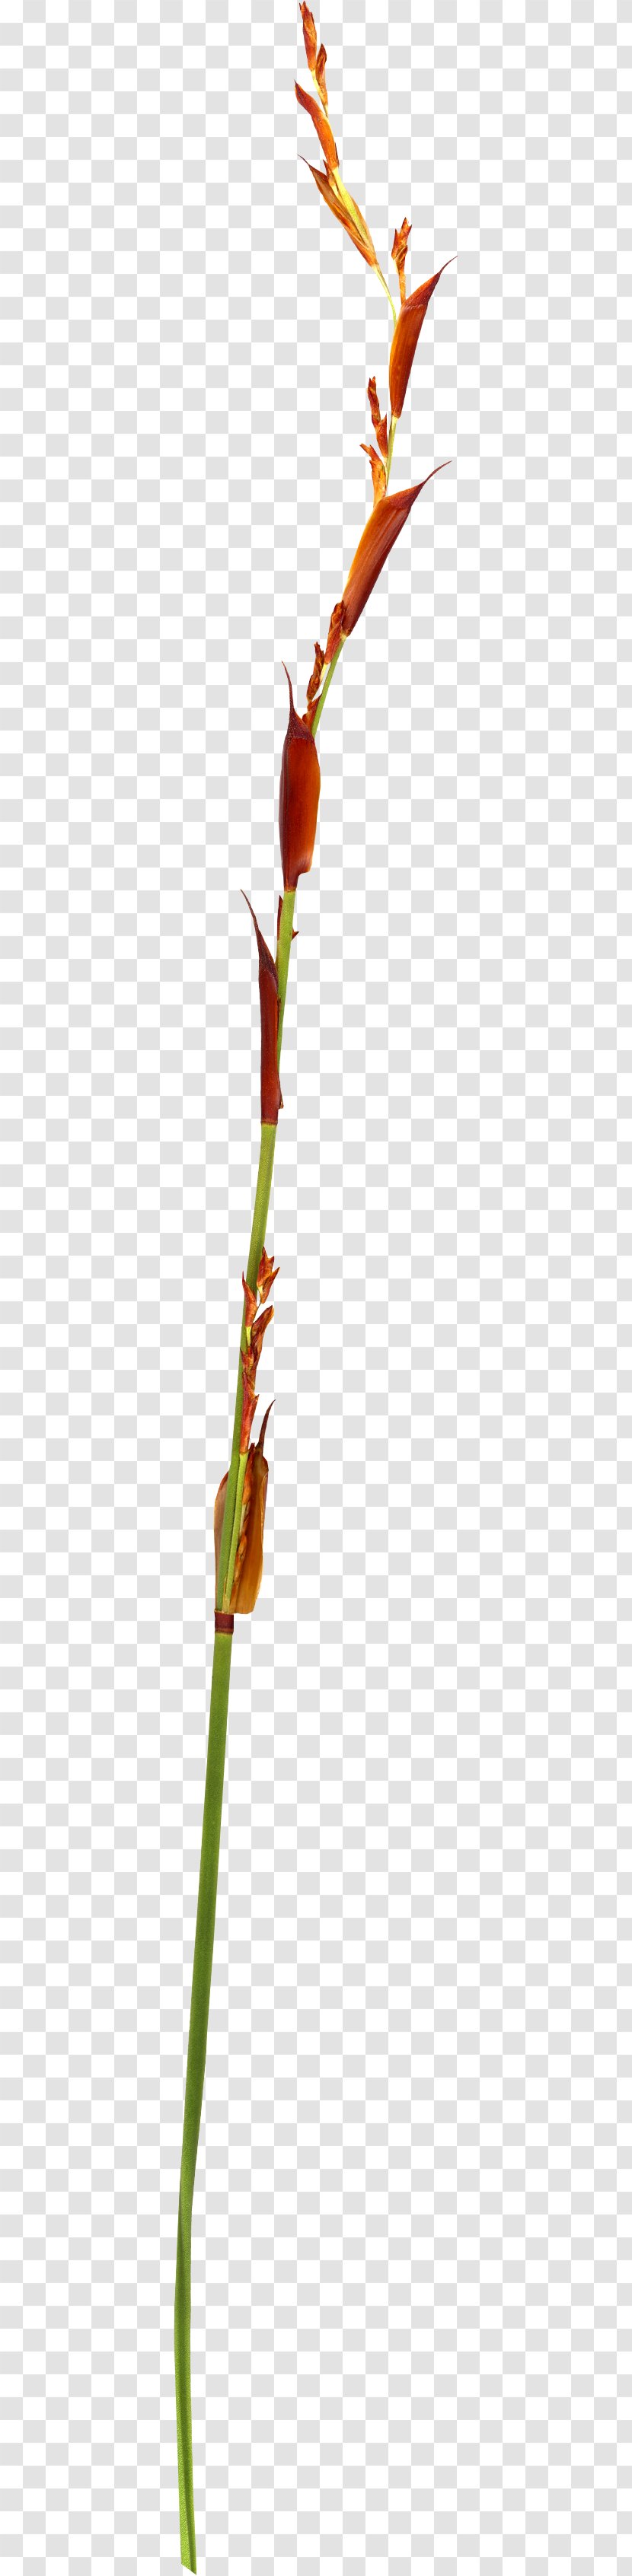 Twig Plant Stem Bud Leaf Transparent PNG